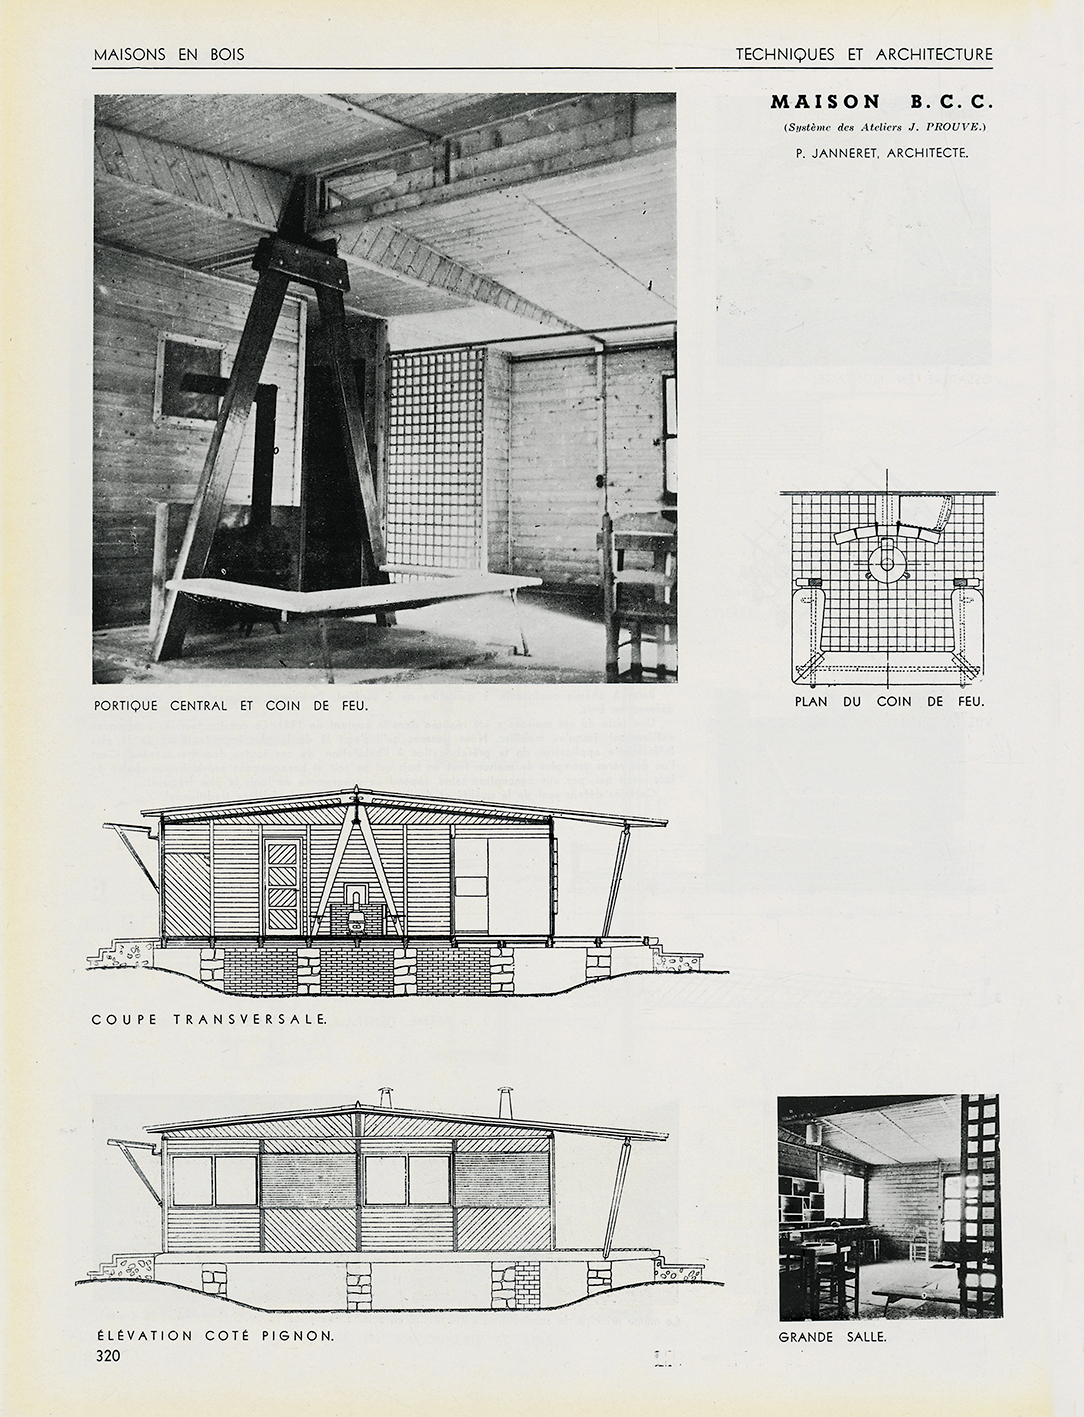 “Wooden house, BCC house, Ateliers Jean Prouvé system. Architect Pierre Jeanneret”, <i>Techniques et Architecture</i>, no. 9-10, September-October 1942.